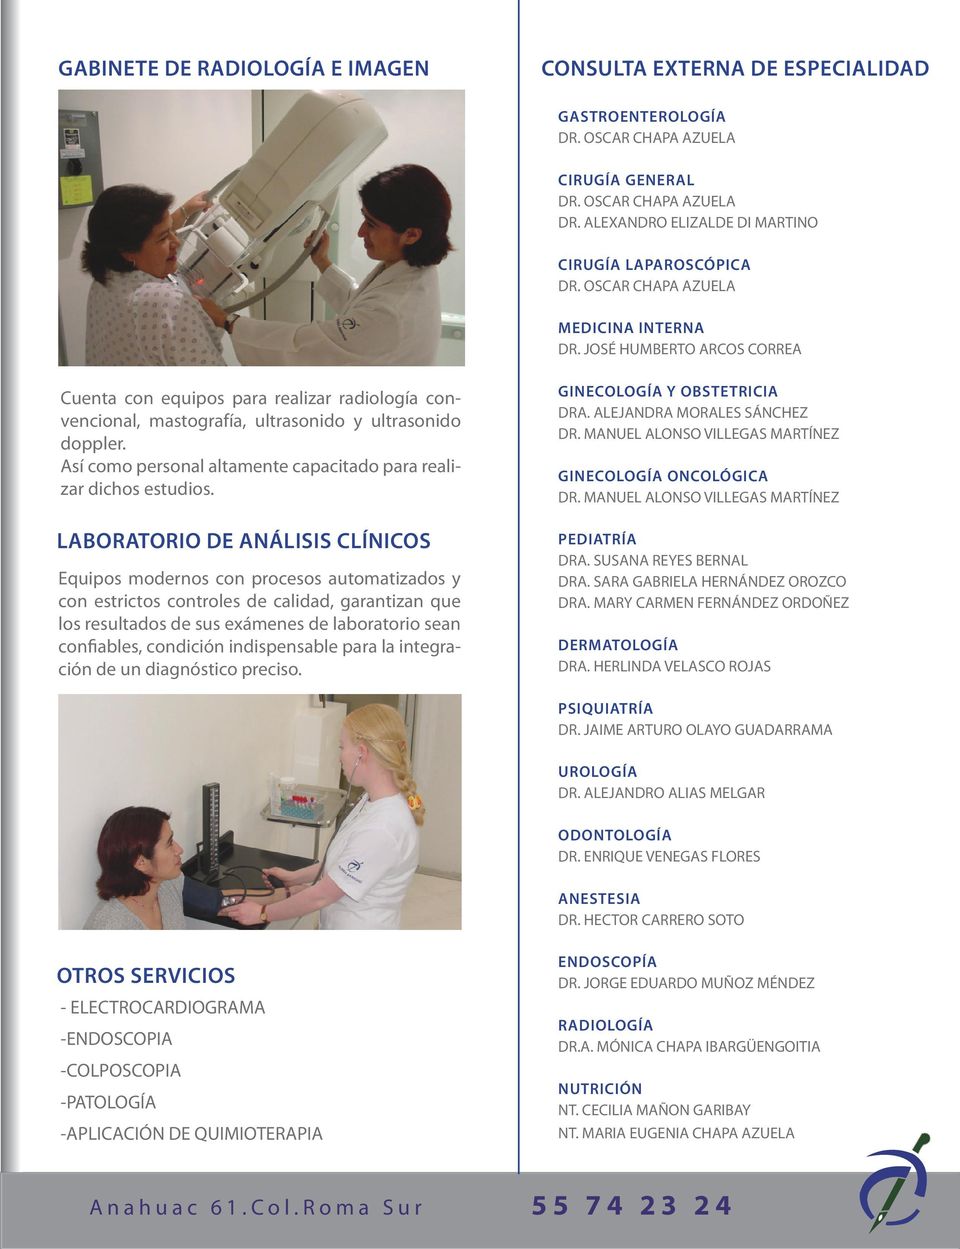 JOSÉ HUMBERTO ARCOS CORREA Cuenta con equipos para realizar radiología convencional, mastografía, ultrasonido y ultrasonido doppler.